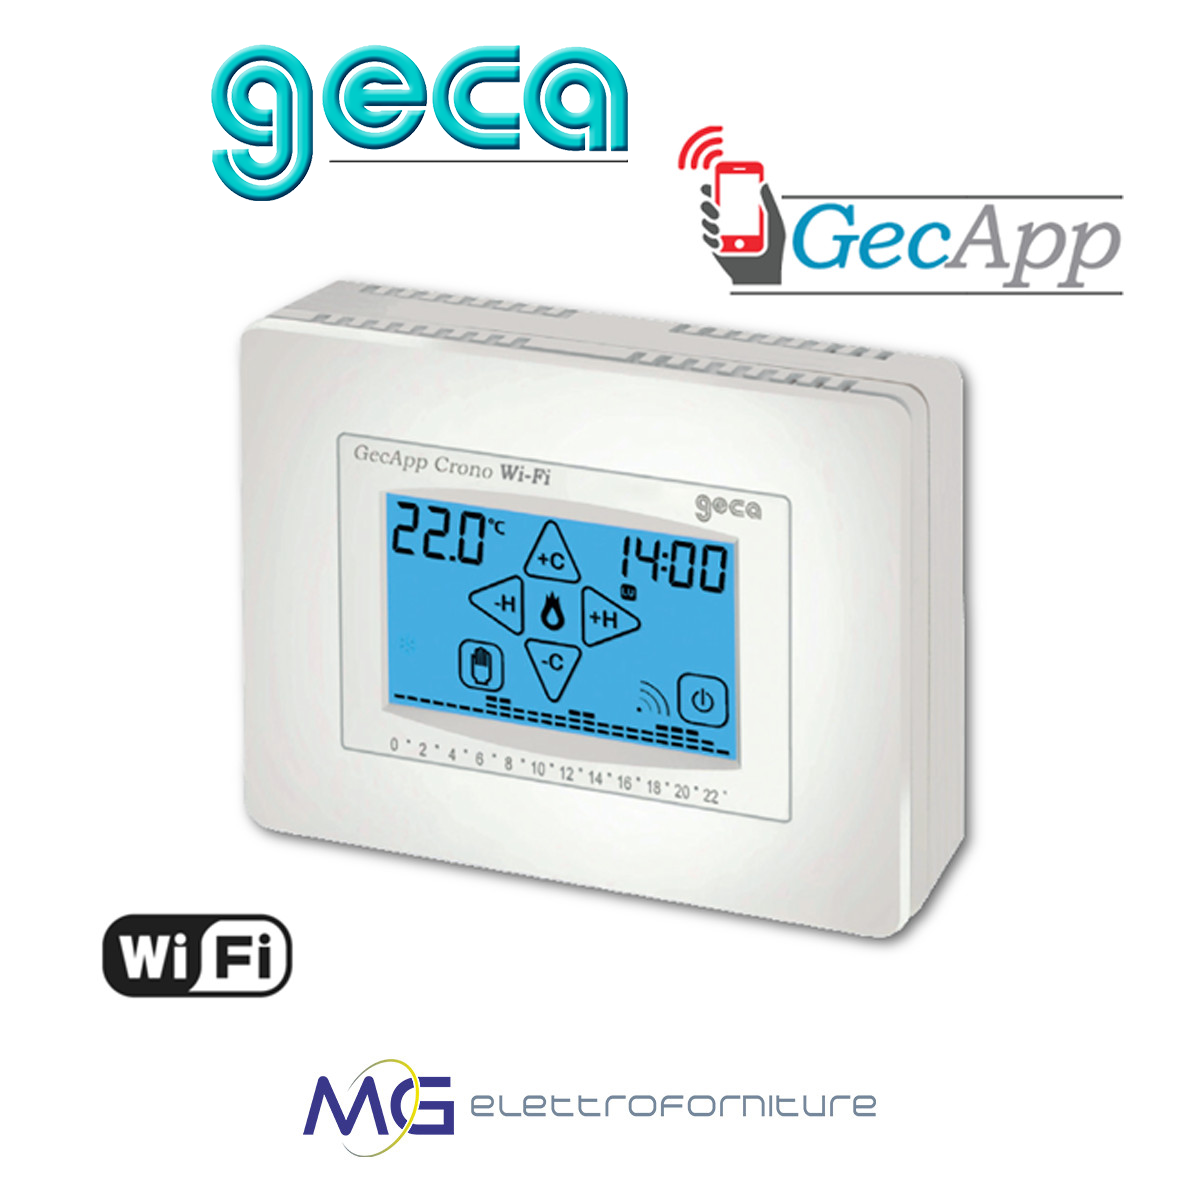 GECA GECAPP WiFi cronotermostato settimanale con display touch screen 230V  - Vendita Online Materiale elettrico, antifurti, videosorveglianza - Mg  Elettroforniture